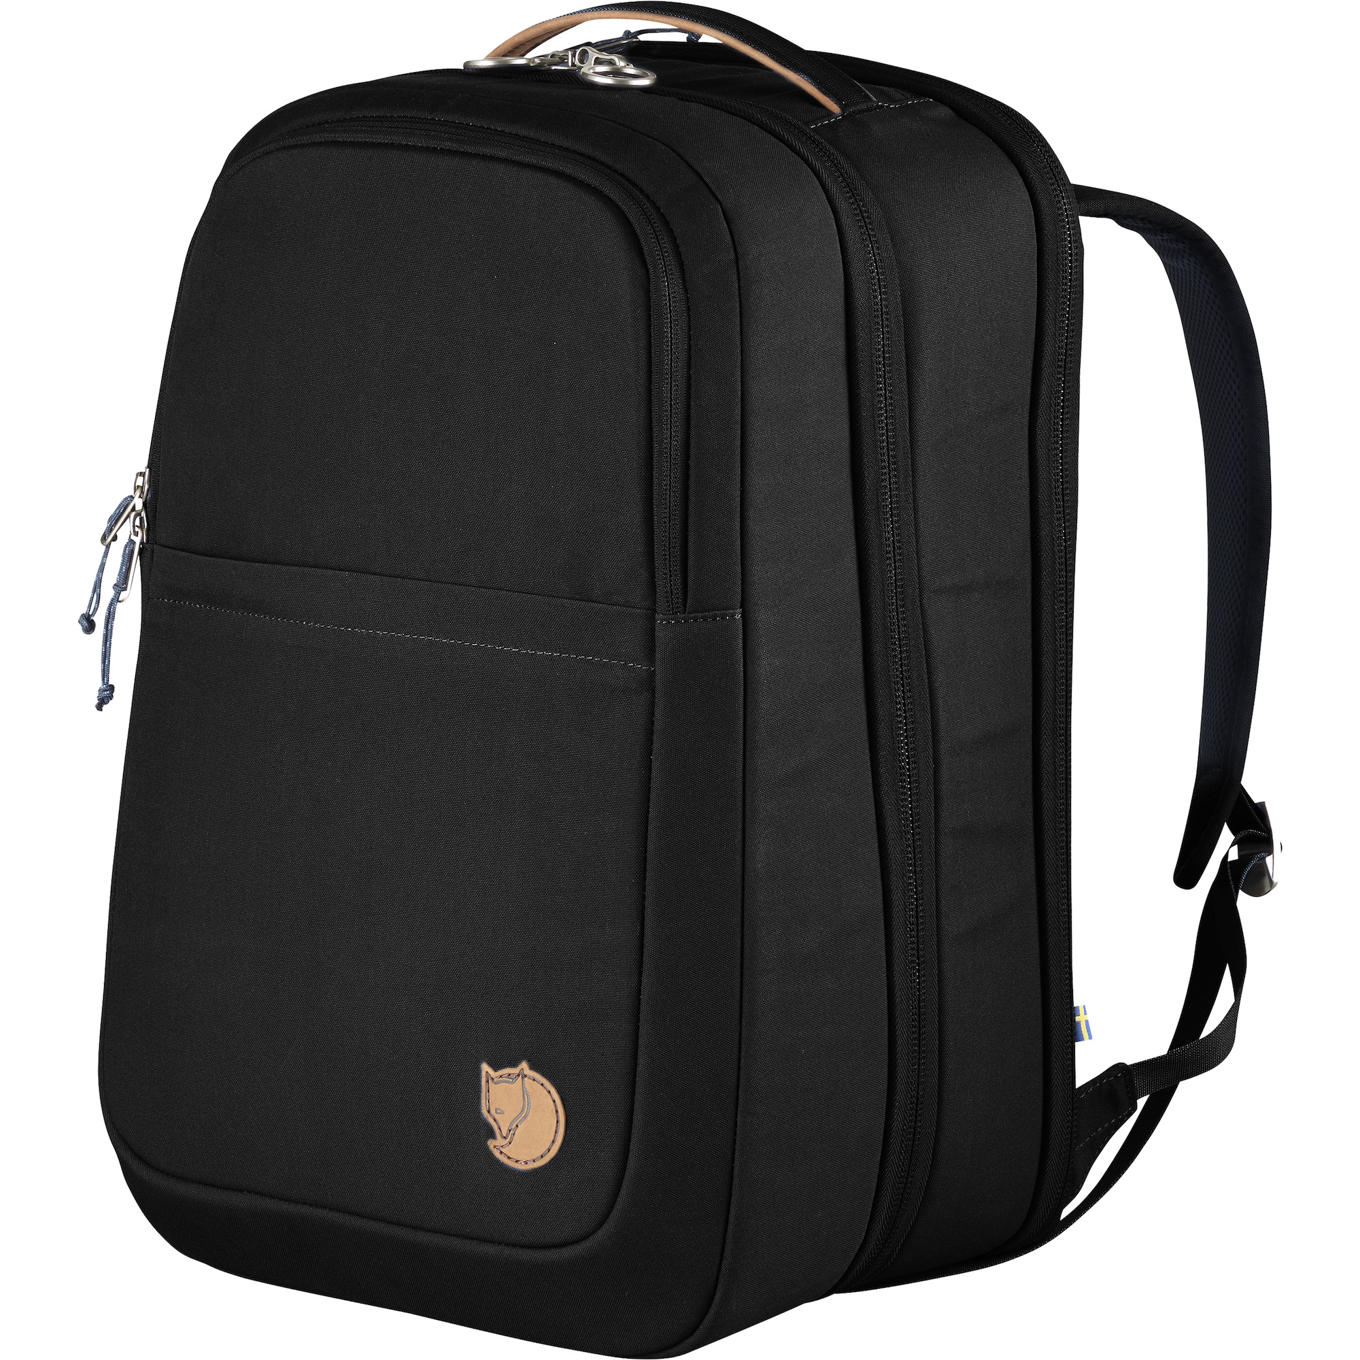 Mini code lock for bags/backpacks/luggage etc.